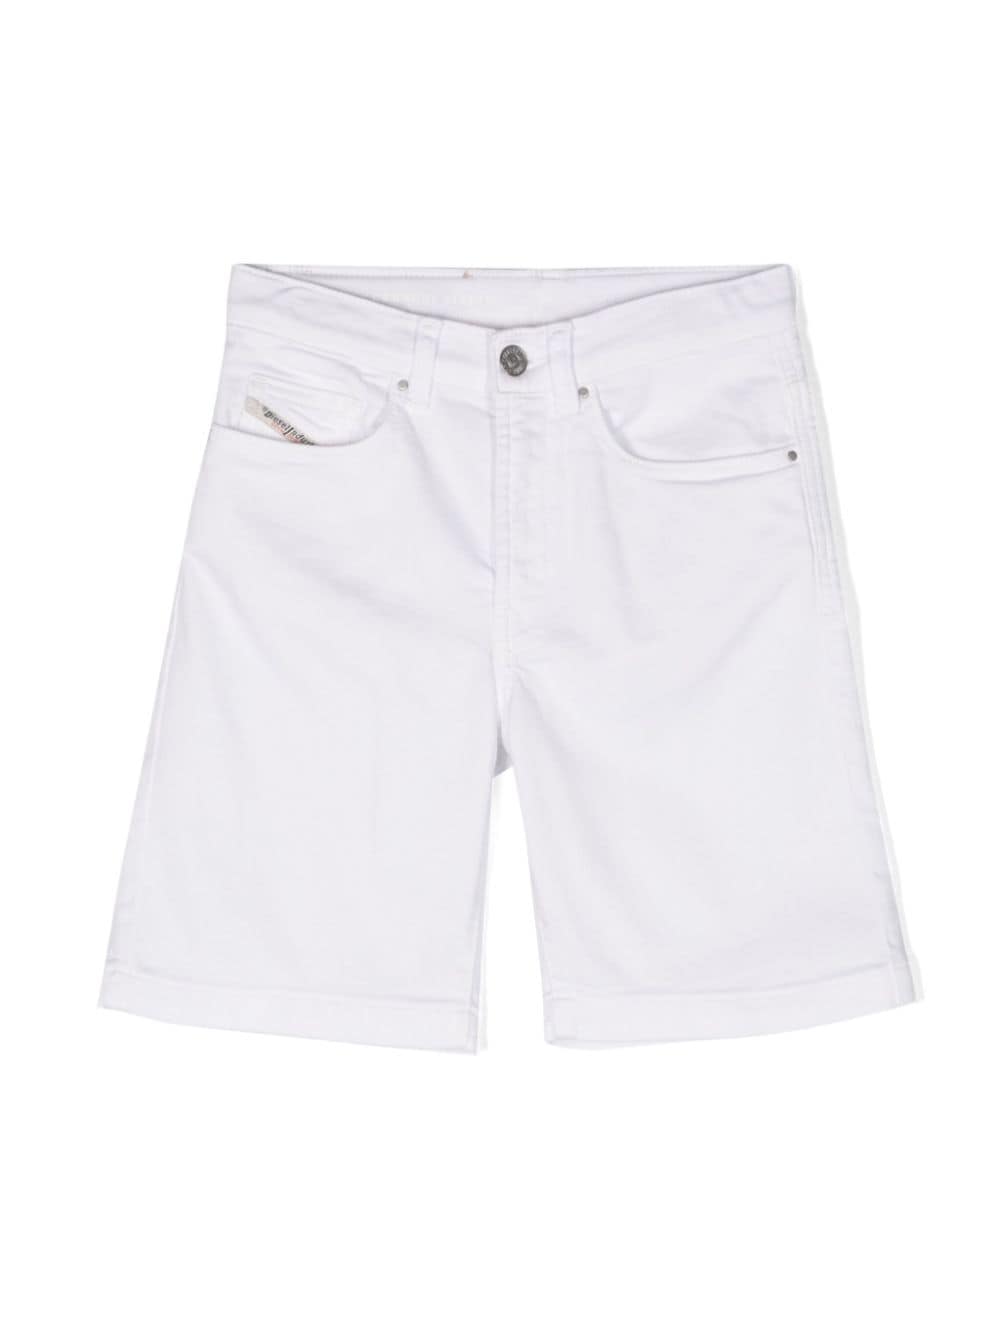 White Bermuda shorts for children